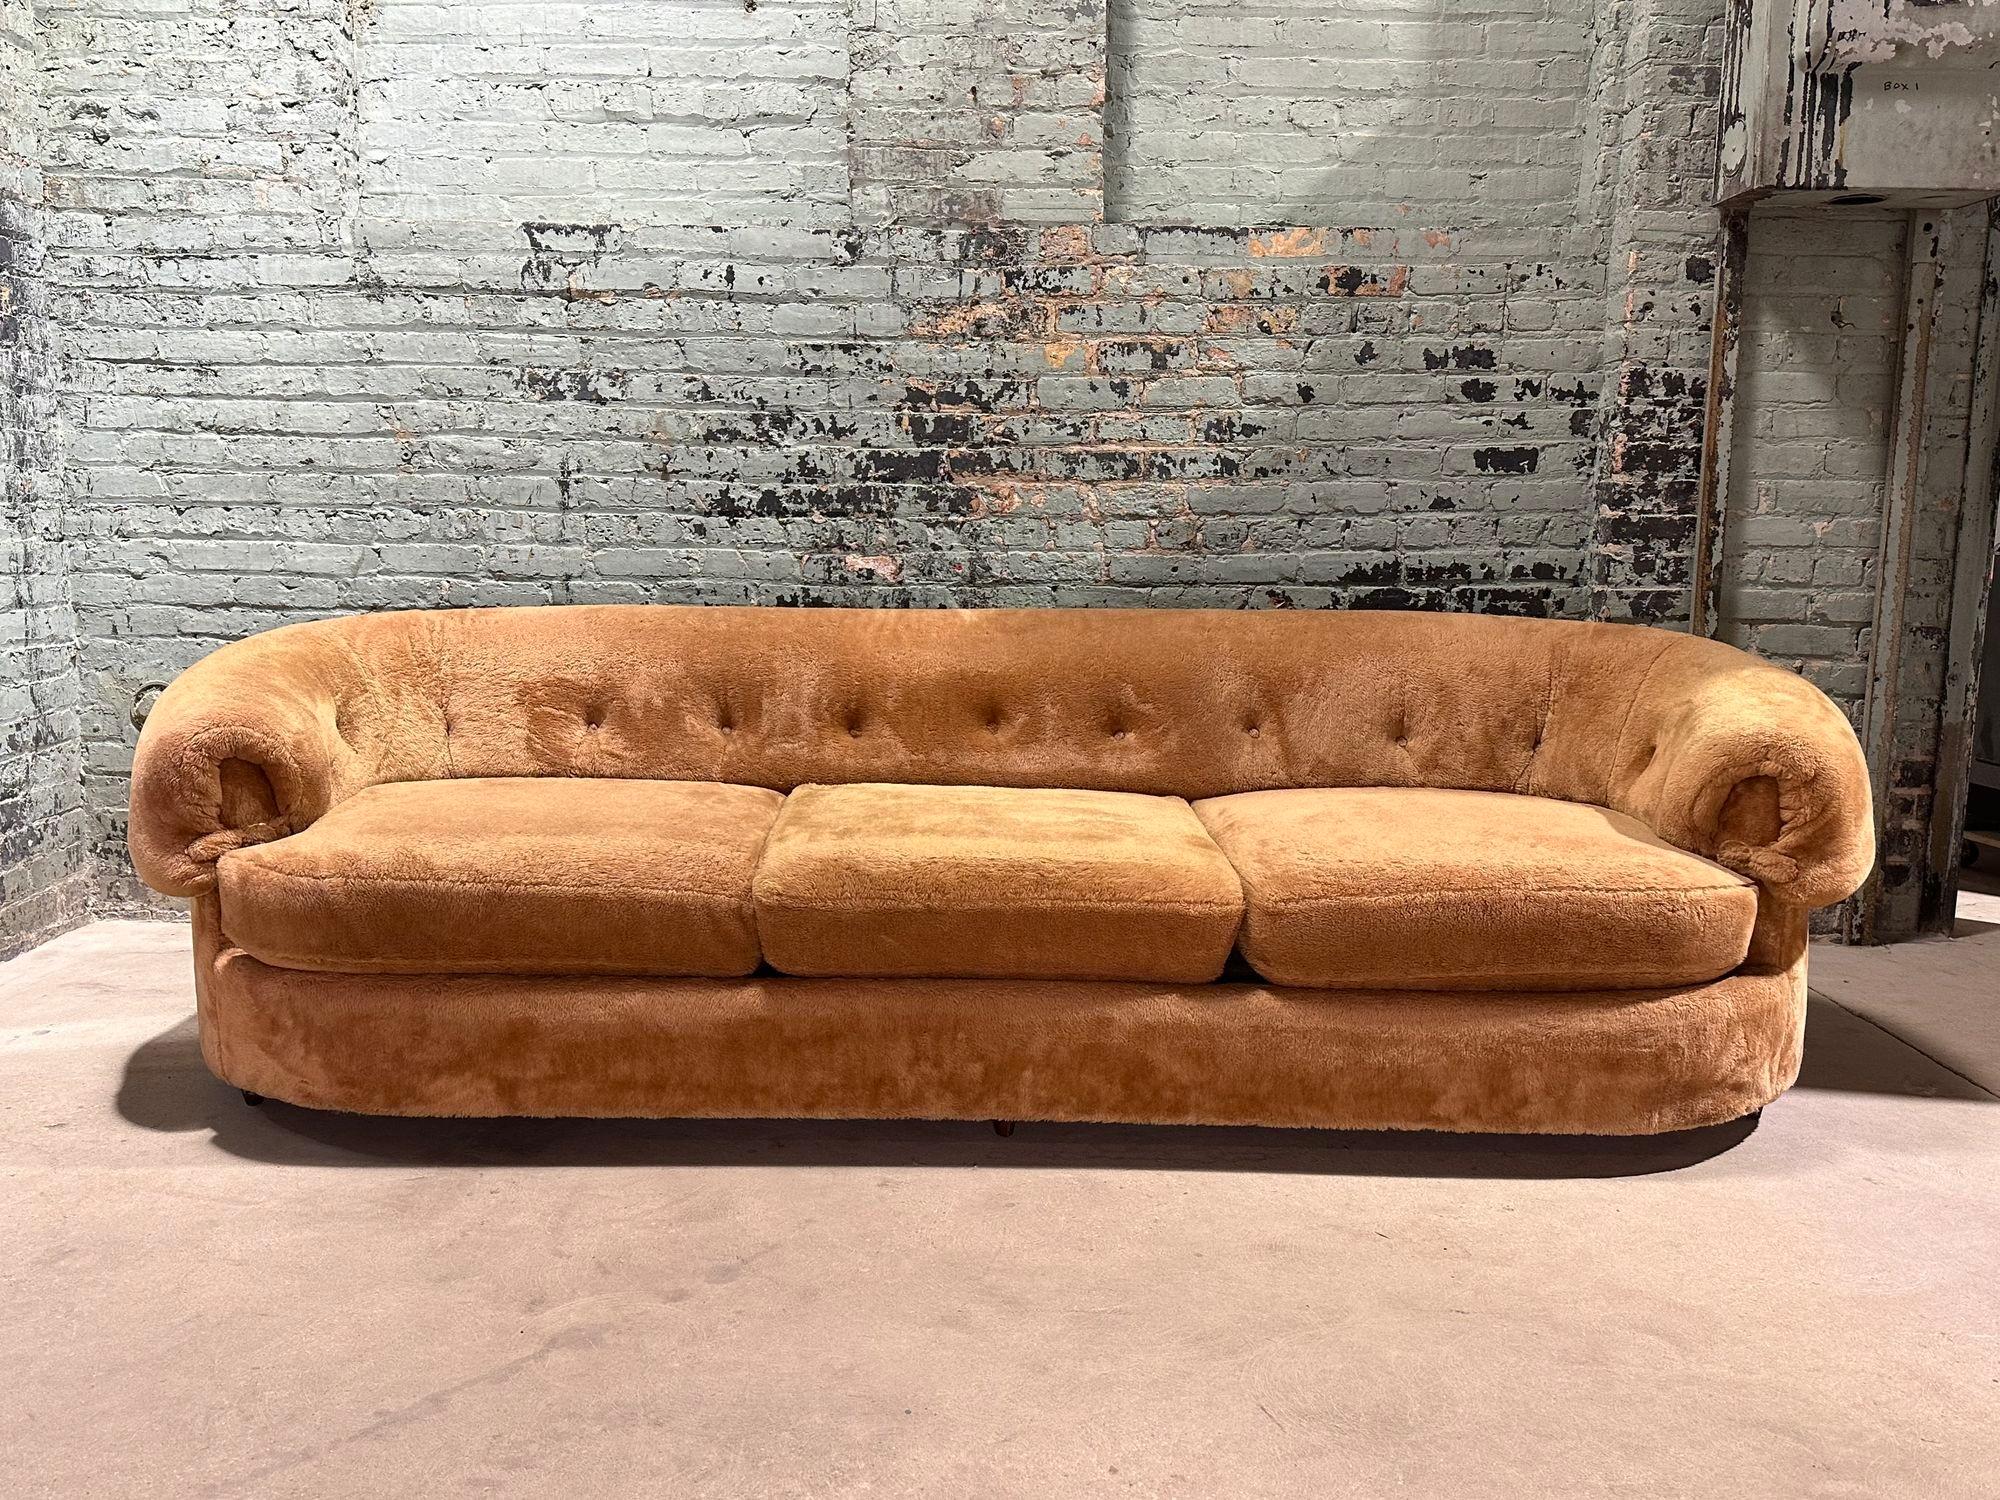 Teddybär-Sofa, 1970er Jahre. Der Stoff ist original, ohne Risse, Brüche oder Flecken. Hergestellt von Schweiger.
Maße: 100